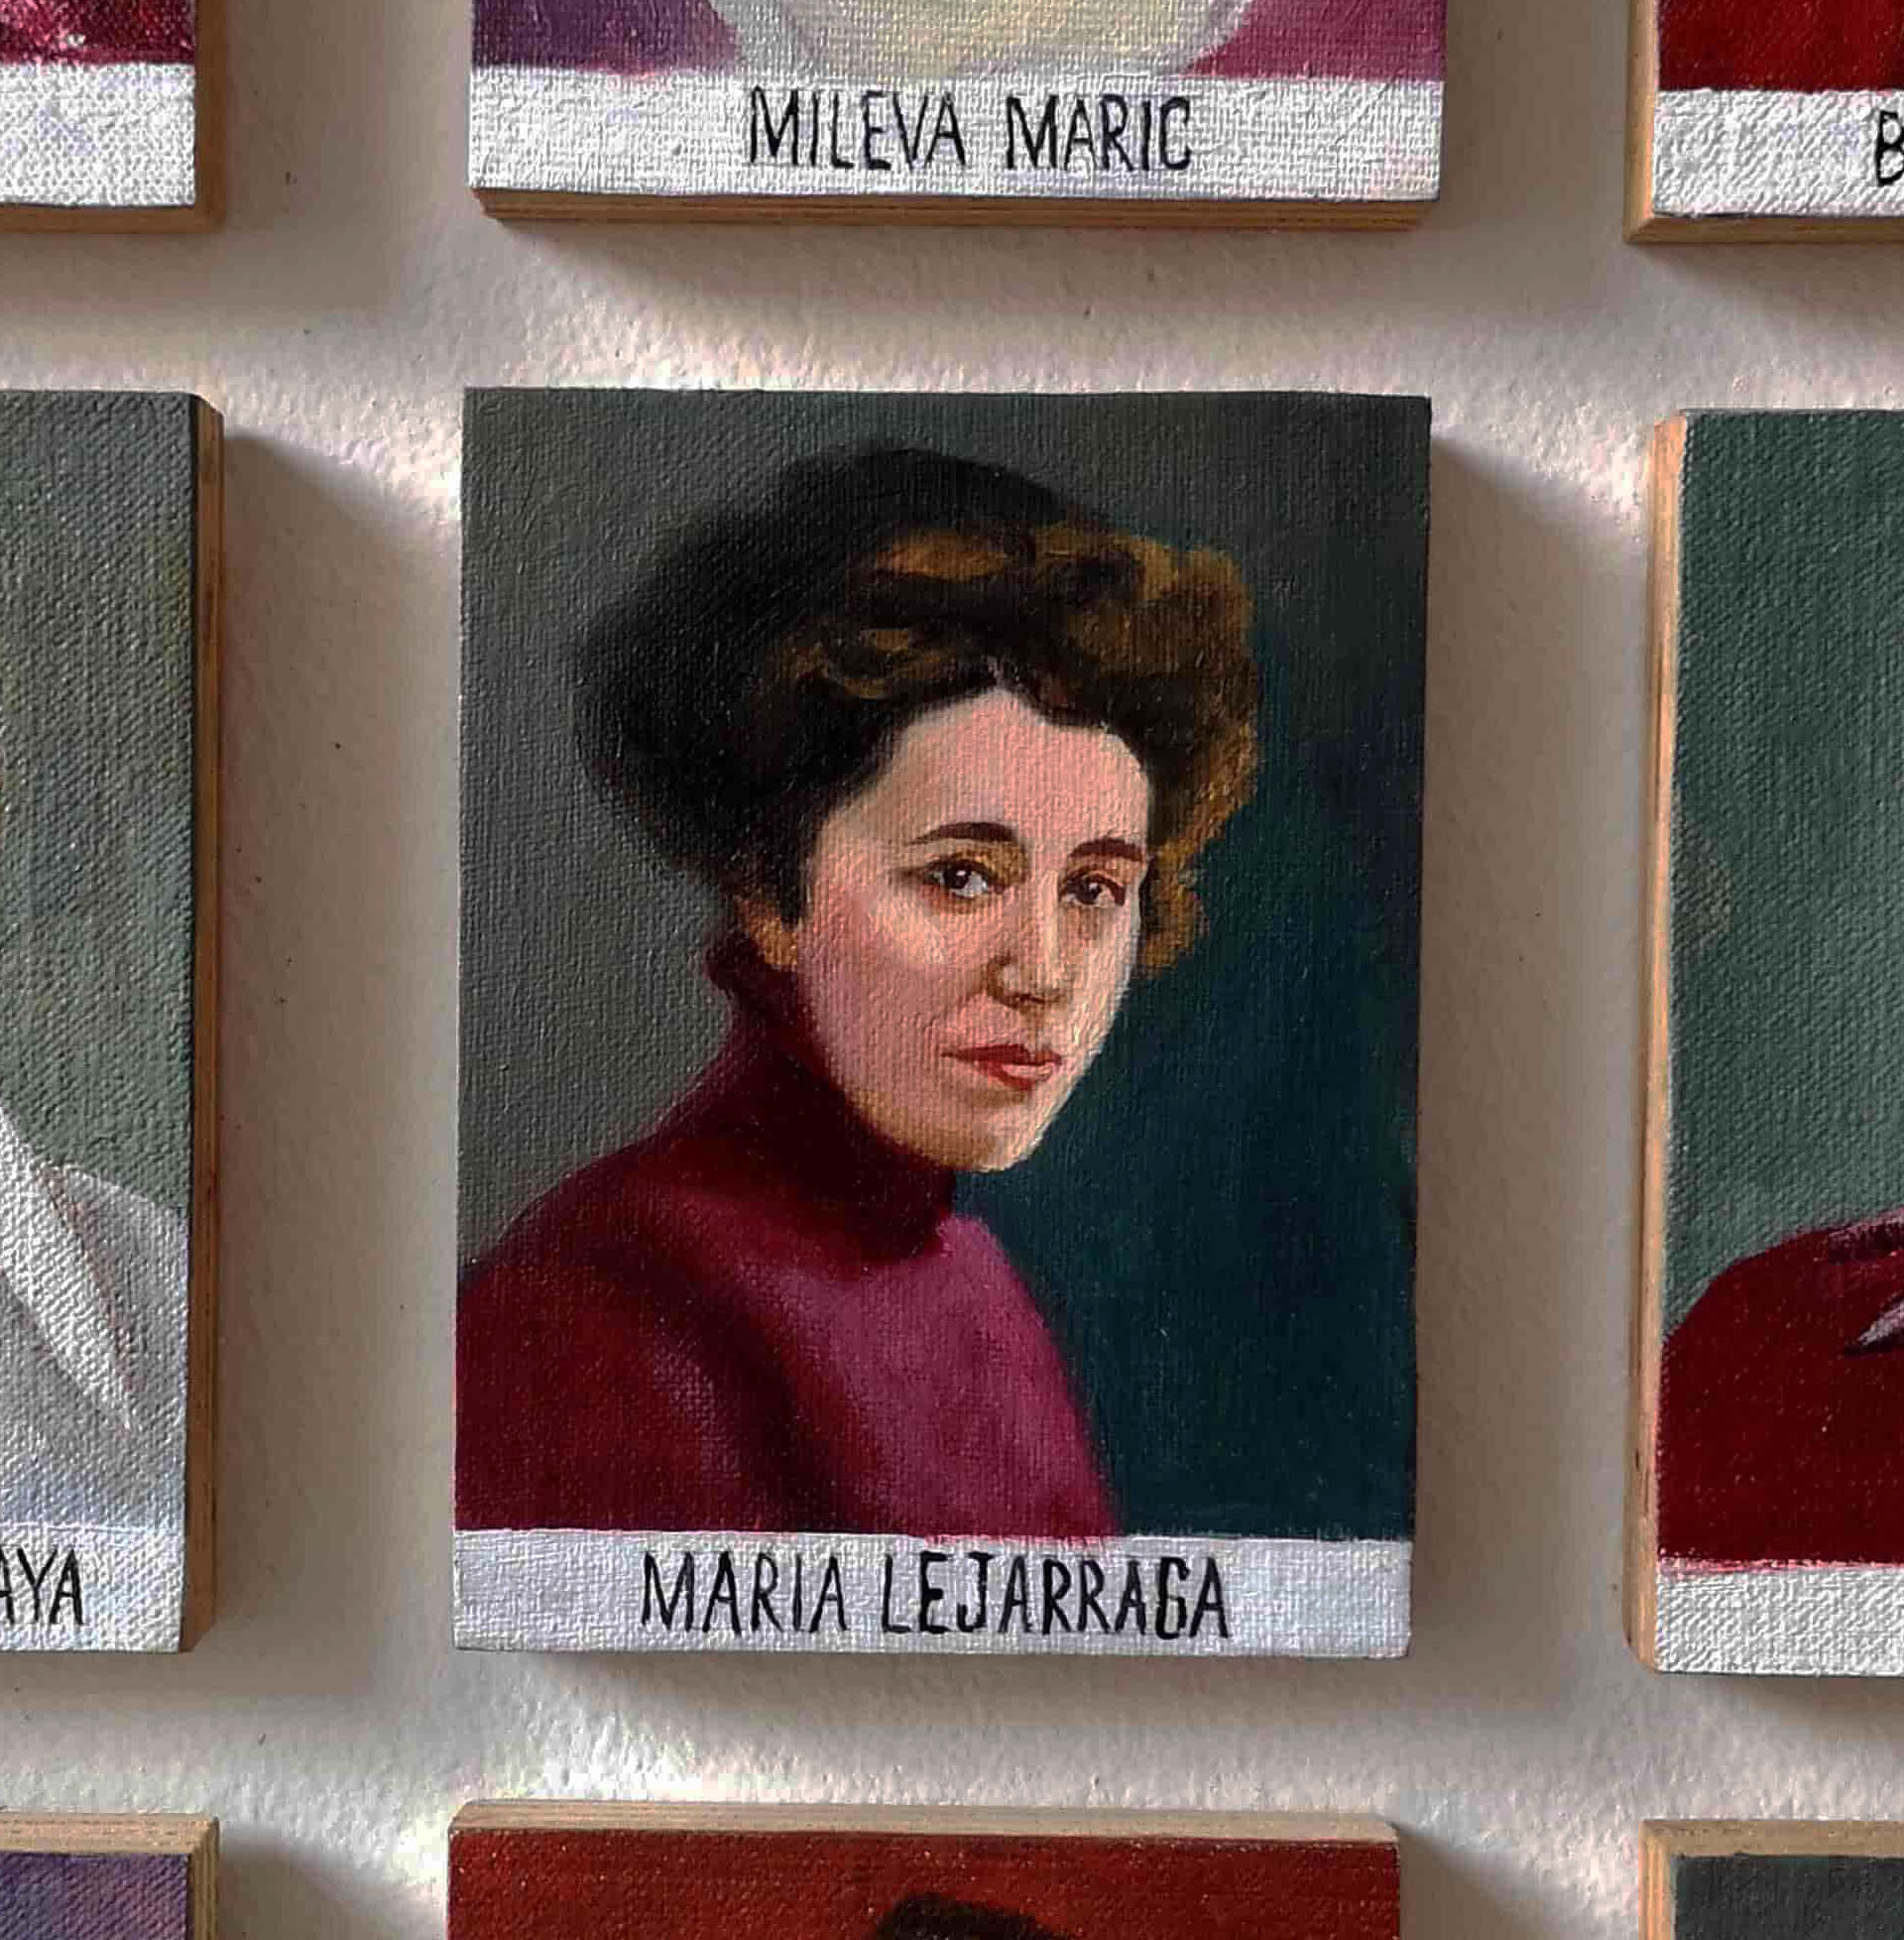 Maria Lejarraga